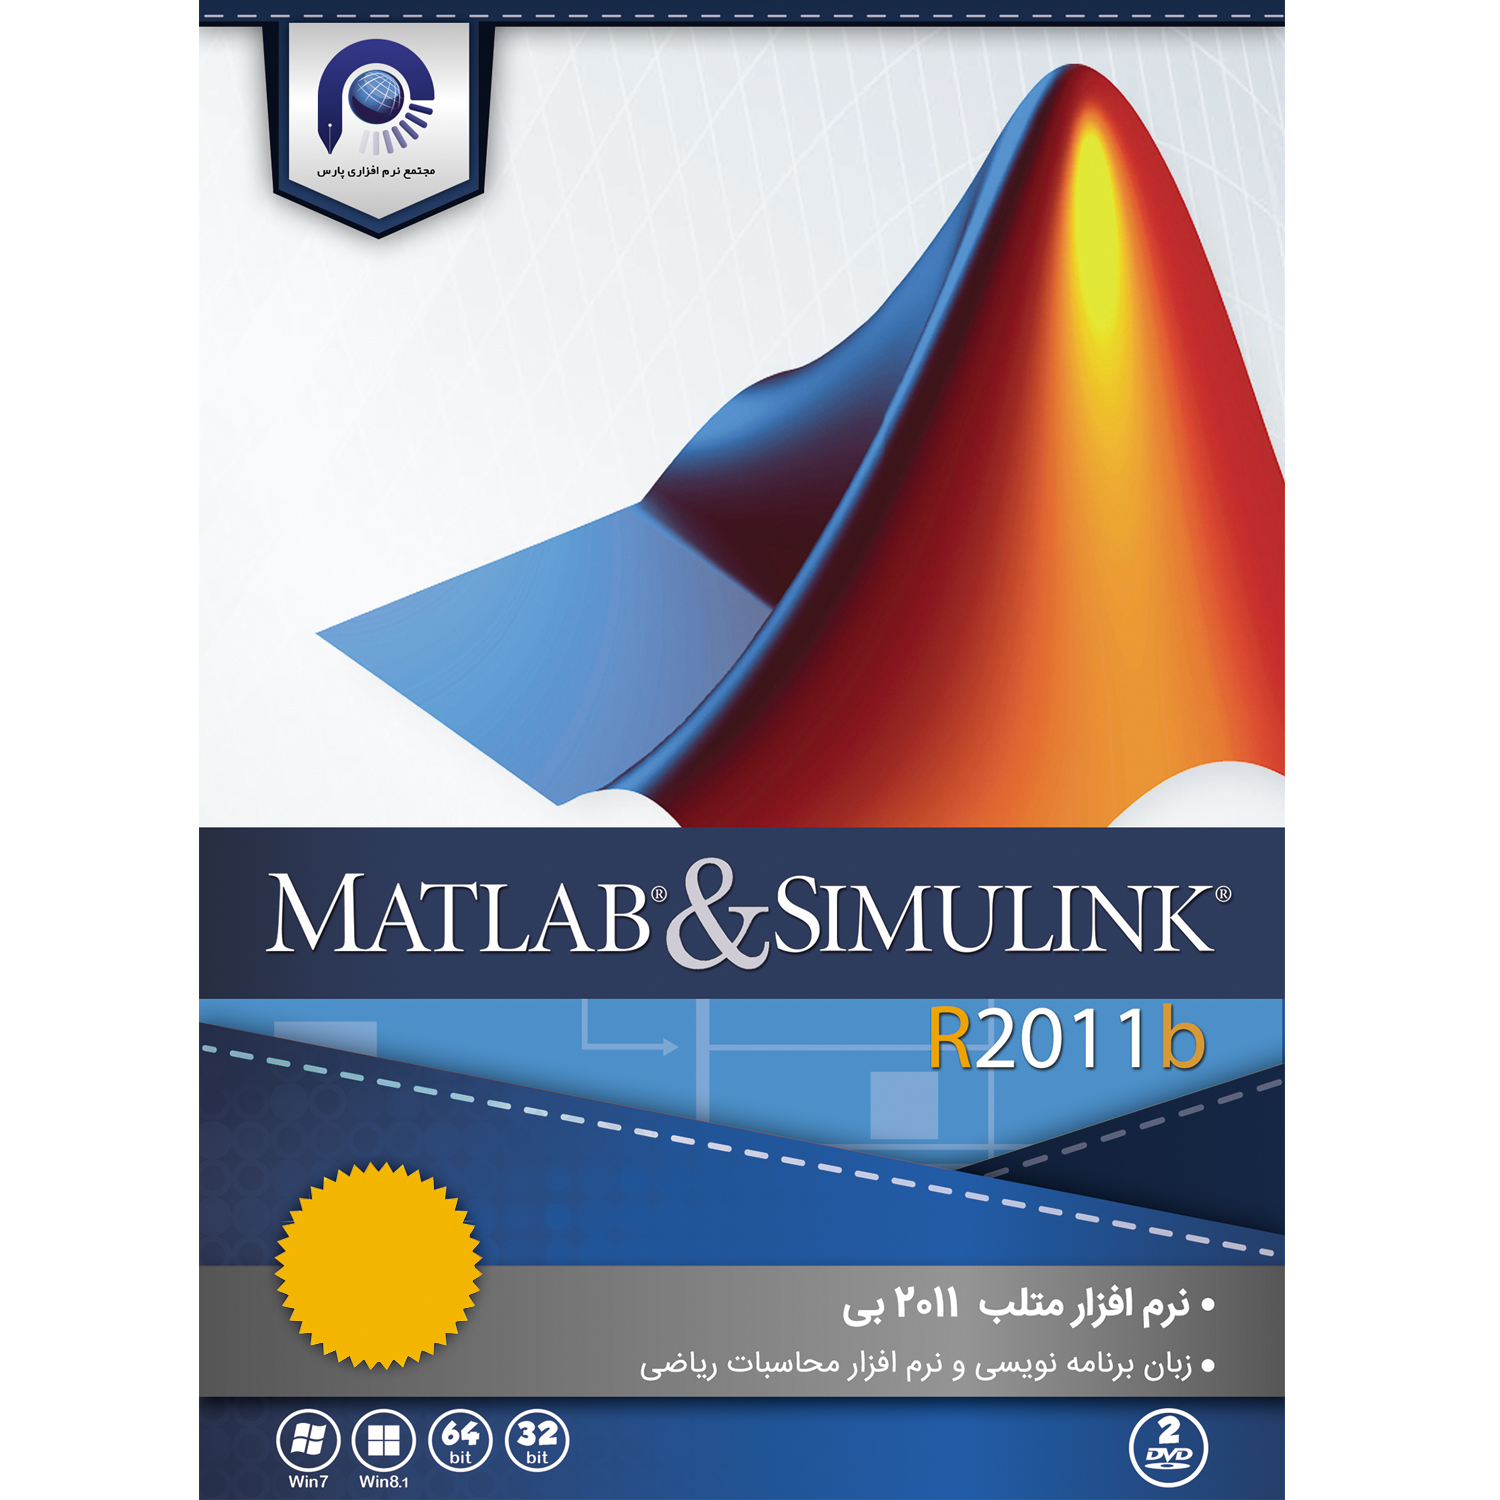  مجموعه نرم افزاری MATLAB & SIMULINK  R2011b  نشر مجتمع نرم افزاری پارس